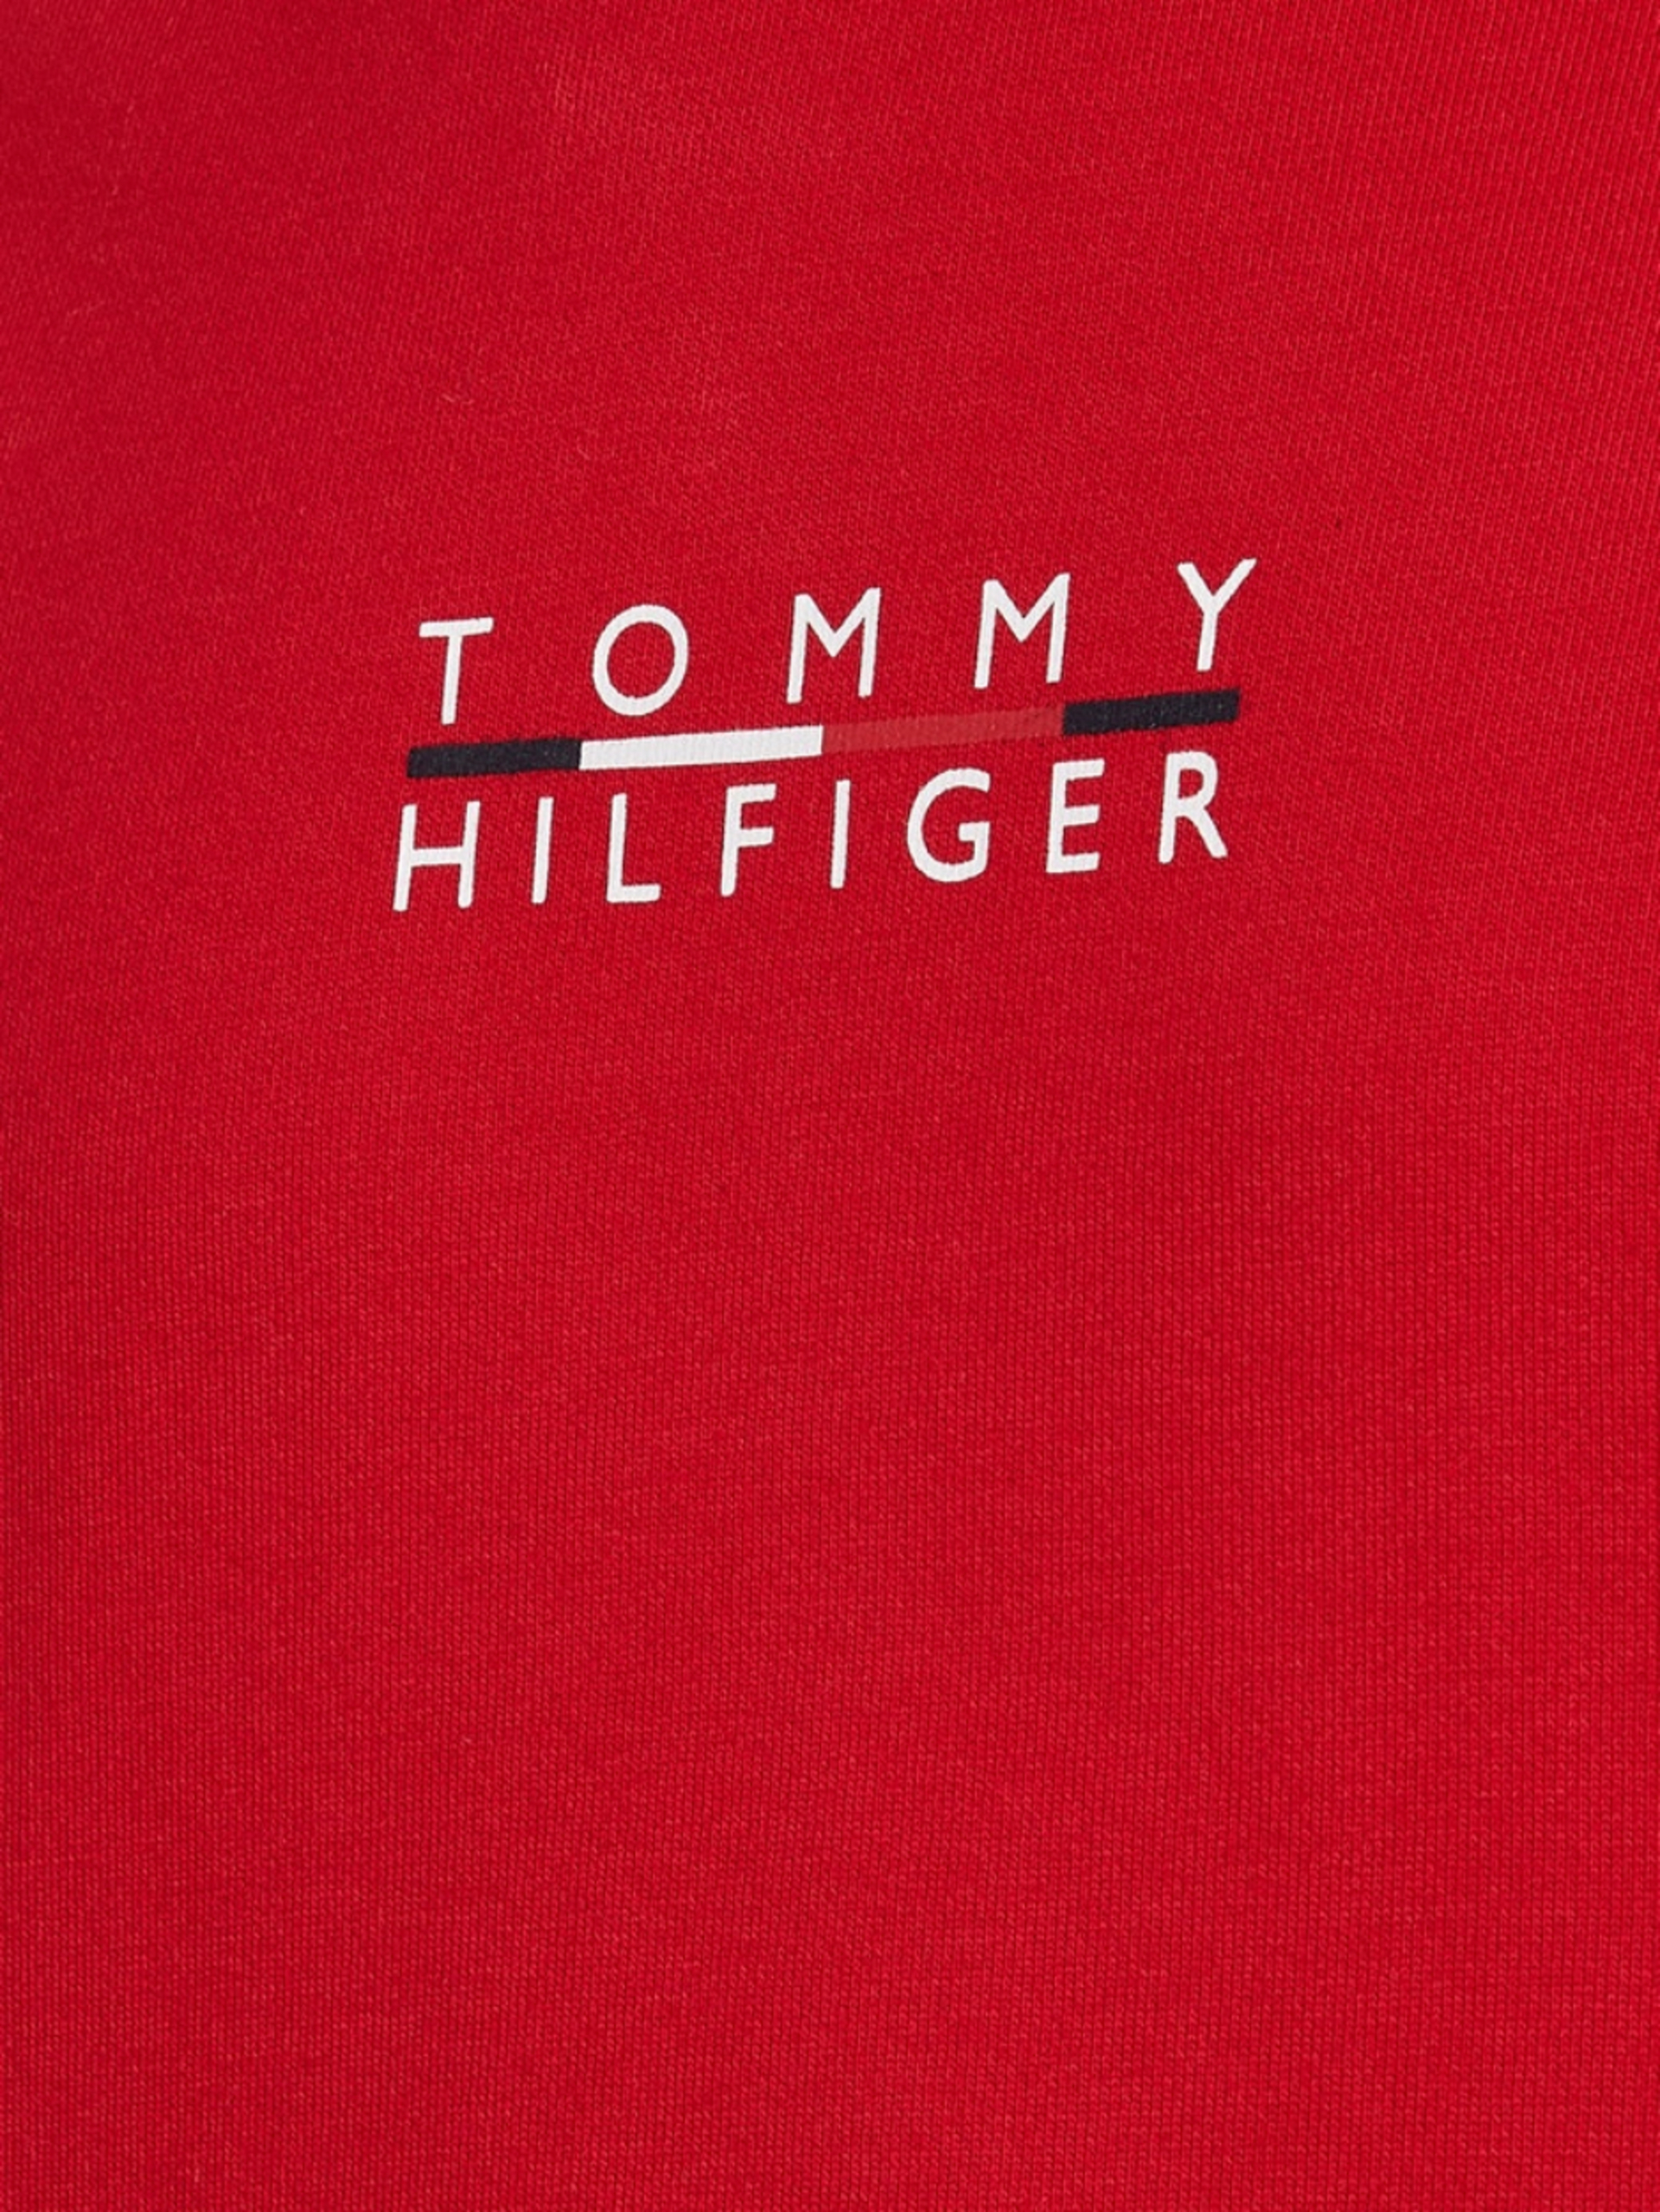 Tommy Hilfiger pánská červená mikina Square logo - L (XLG)